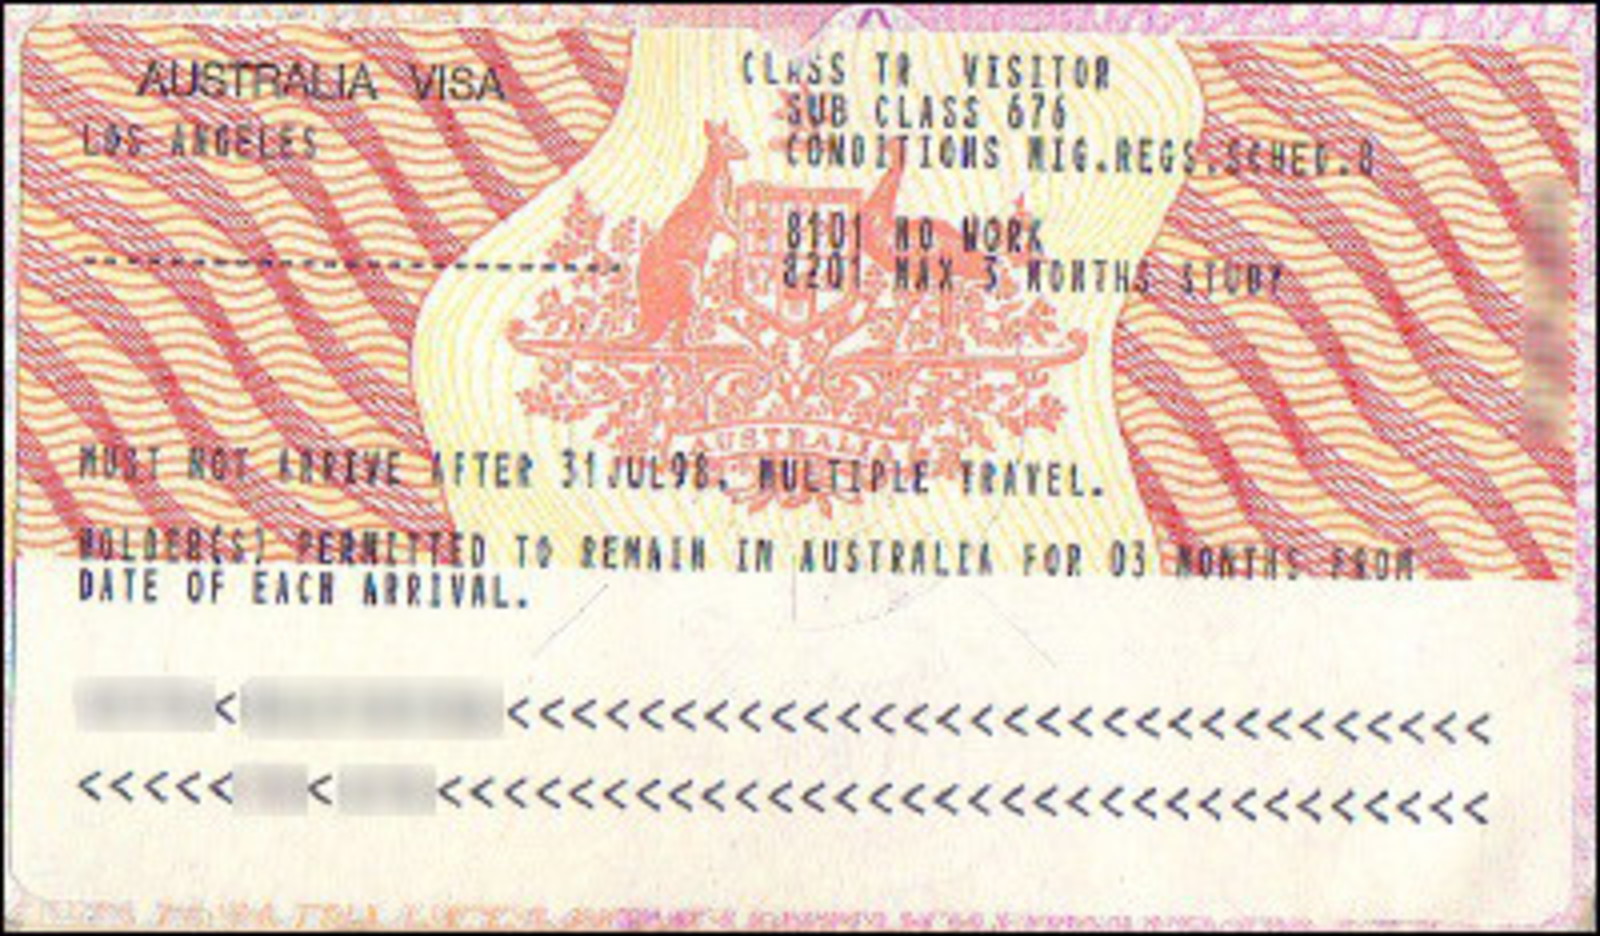 visas for australia travel